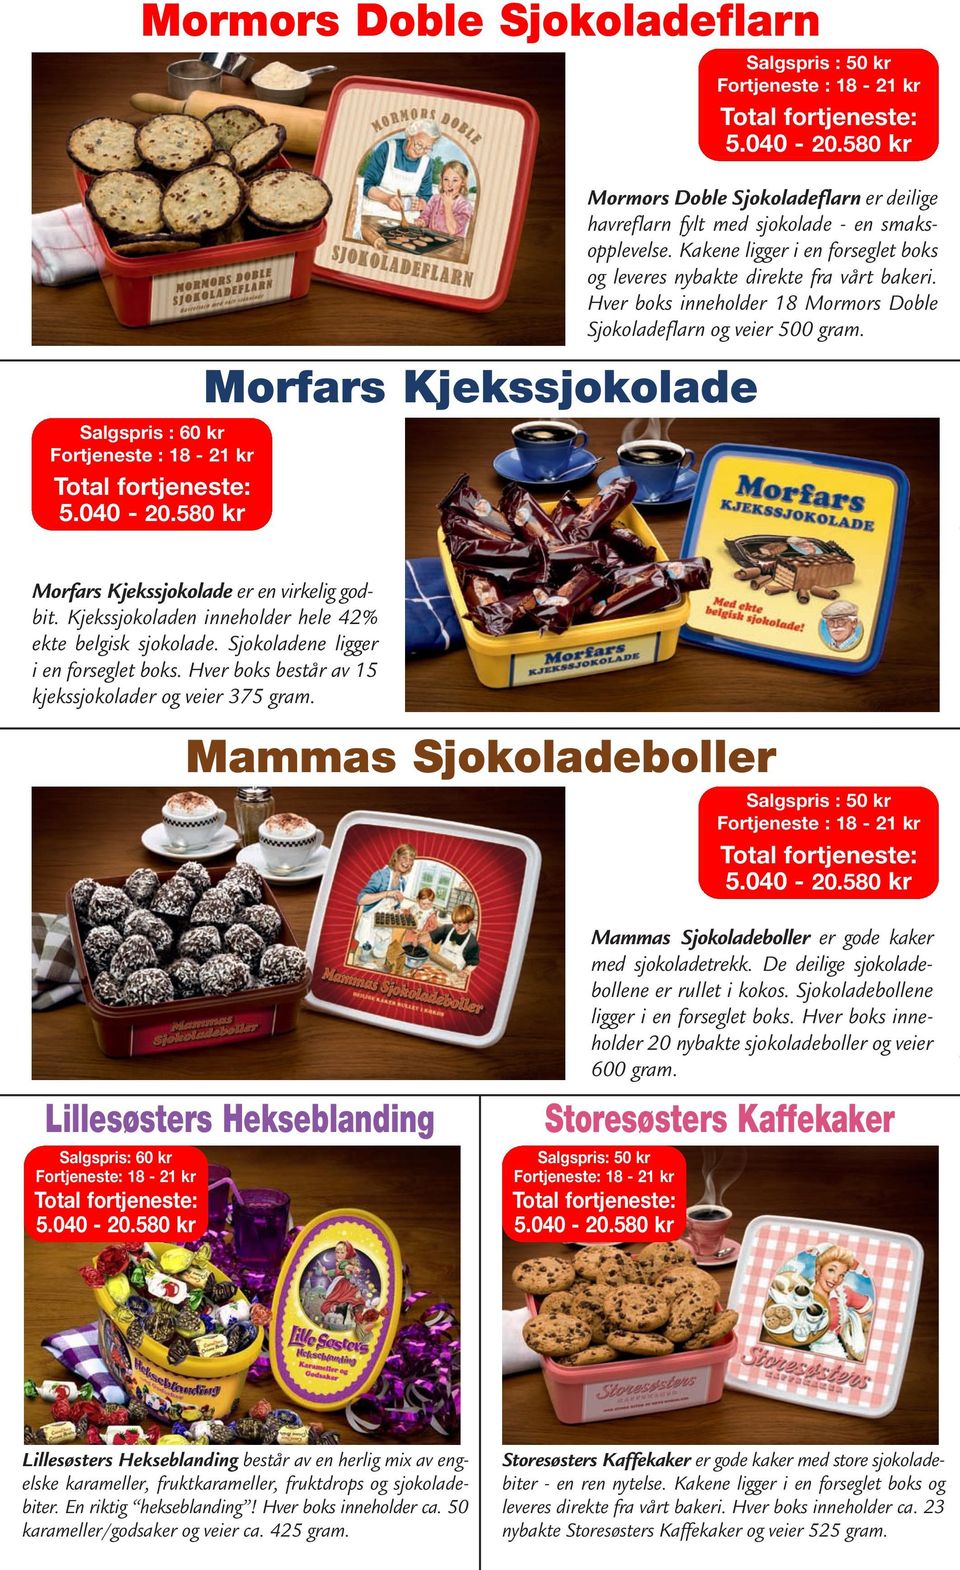 Morfars Kjekssjokolade er en virkelig god - bit. Kjeks sjo ko laden inne holder hele 42% ekte belgisk sjokolade. Sjoko ladene ligger i en forseglet boks.